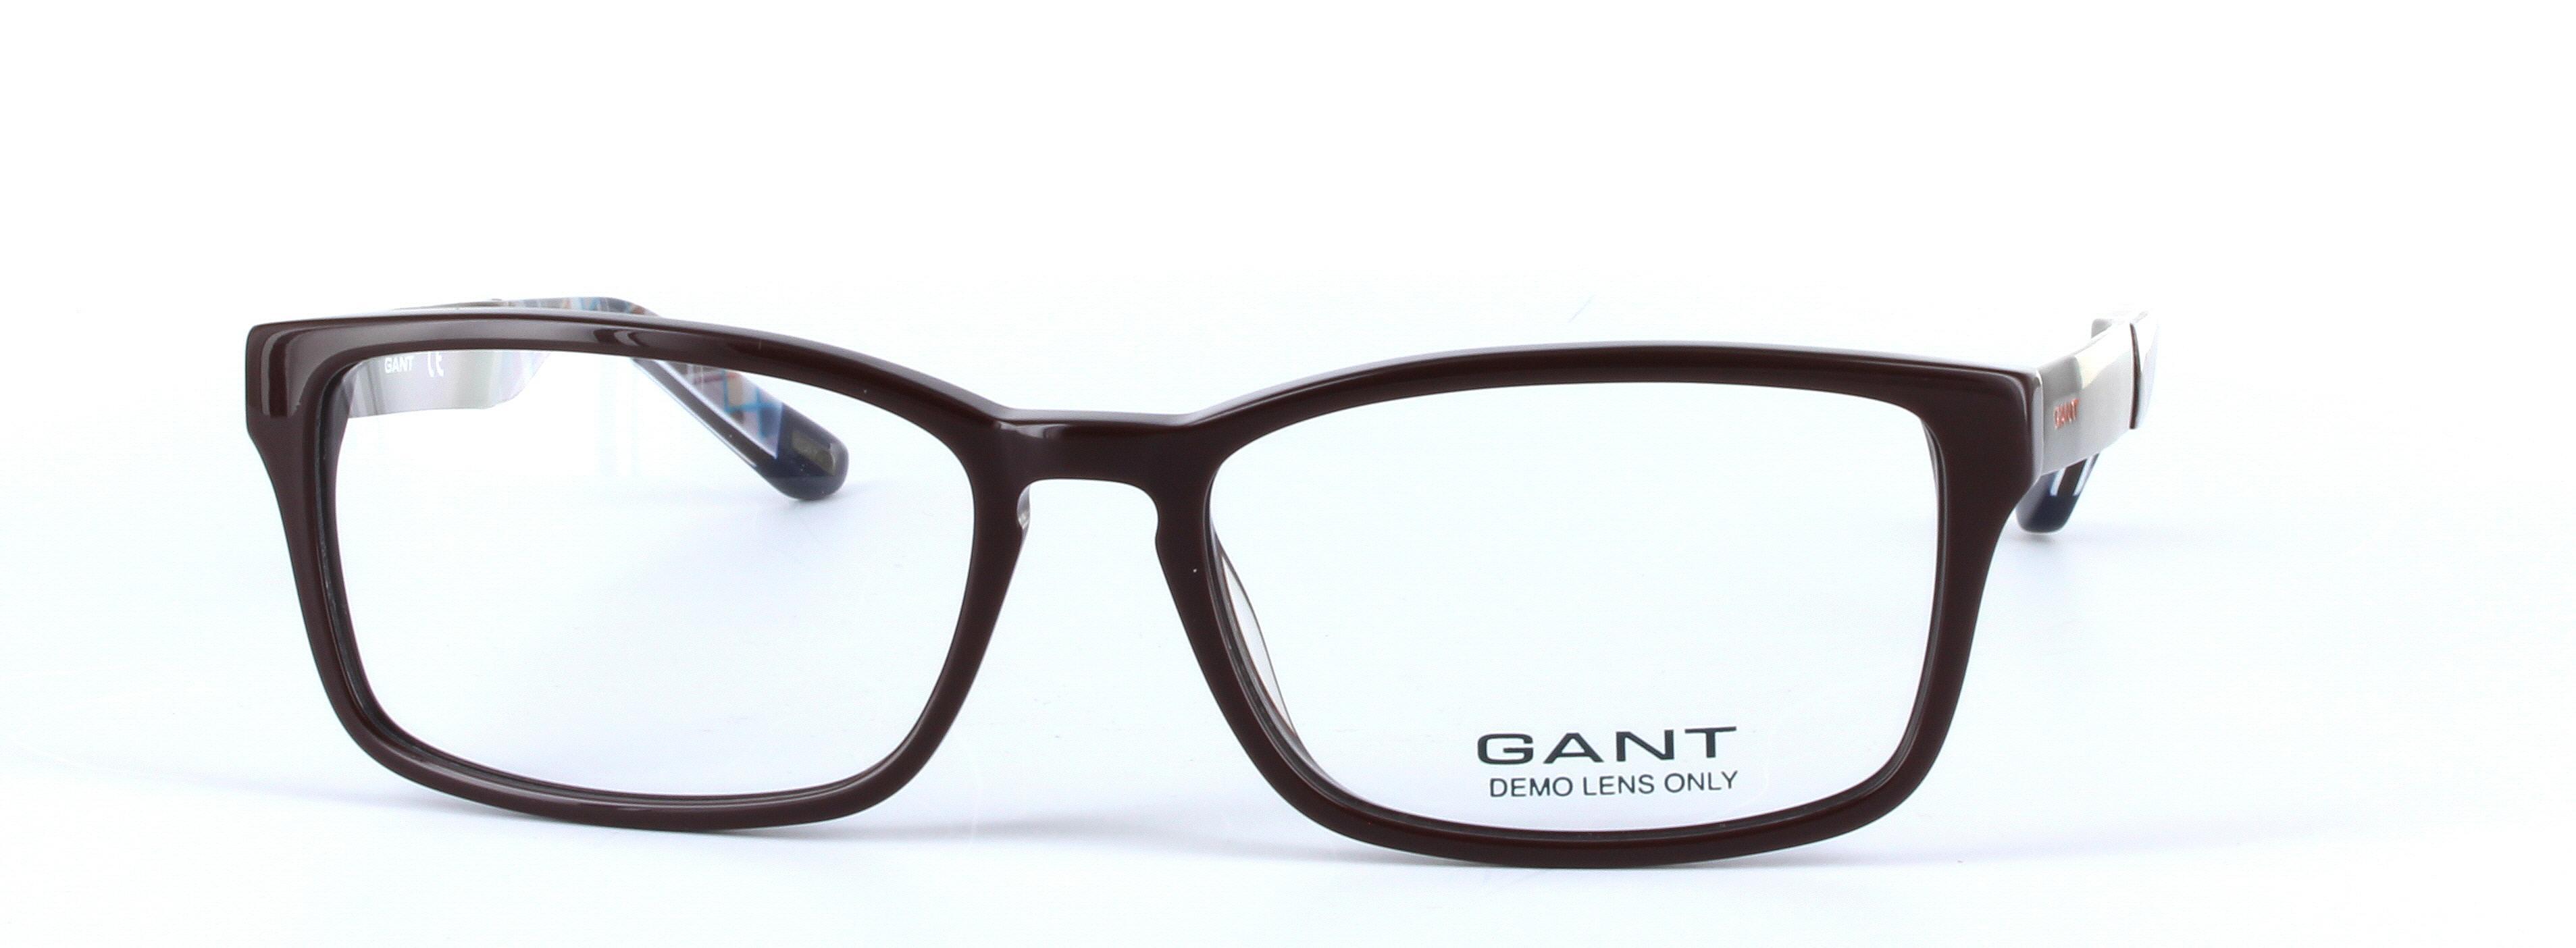 GANT (GA3069-048) Brown Full Rim Oval Rectangular Acetate Glasses - Image View 5